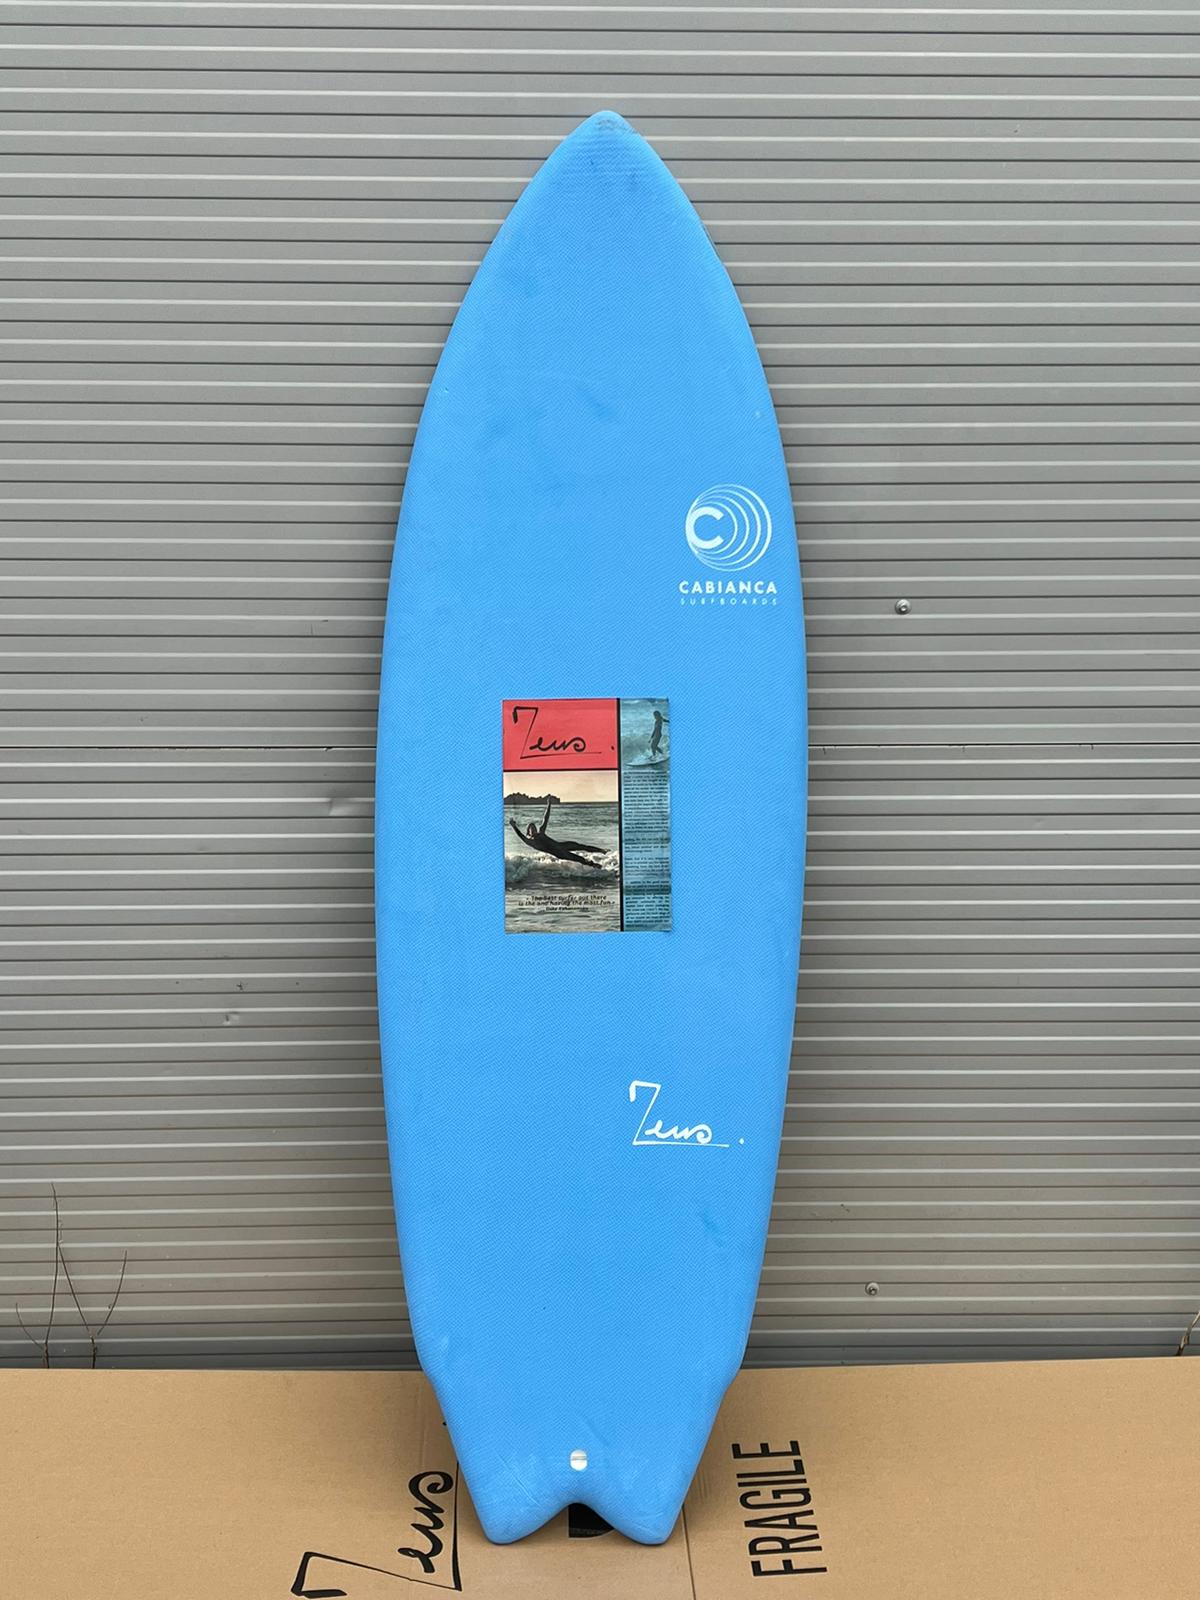 Planche de Surf Occasion Zeus Cabianca 5'10